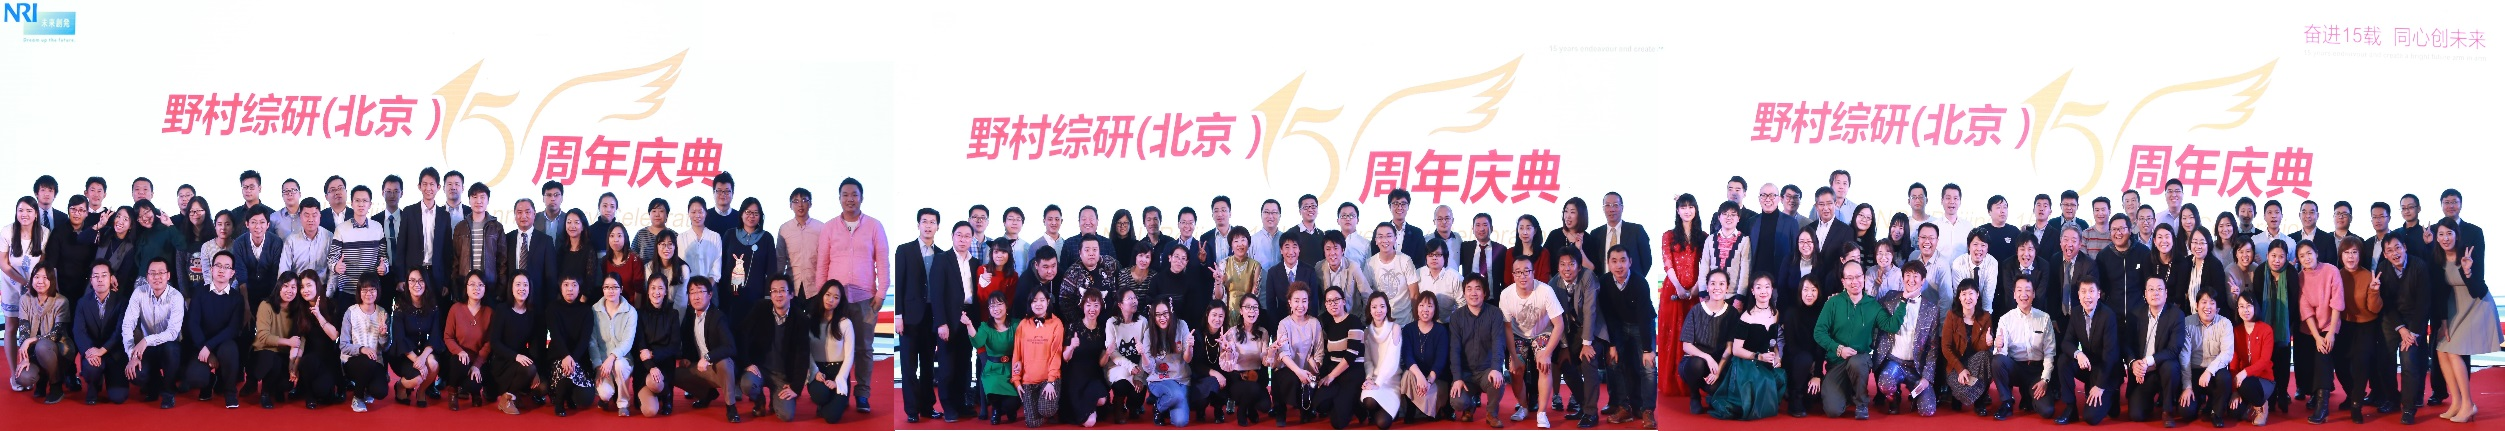 超过150人参加！隆重庆祝NRI北京成立15周年